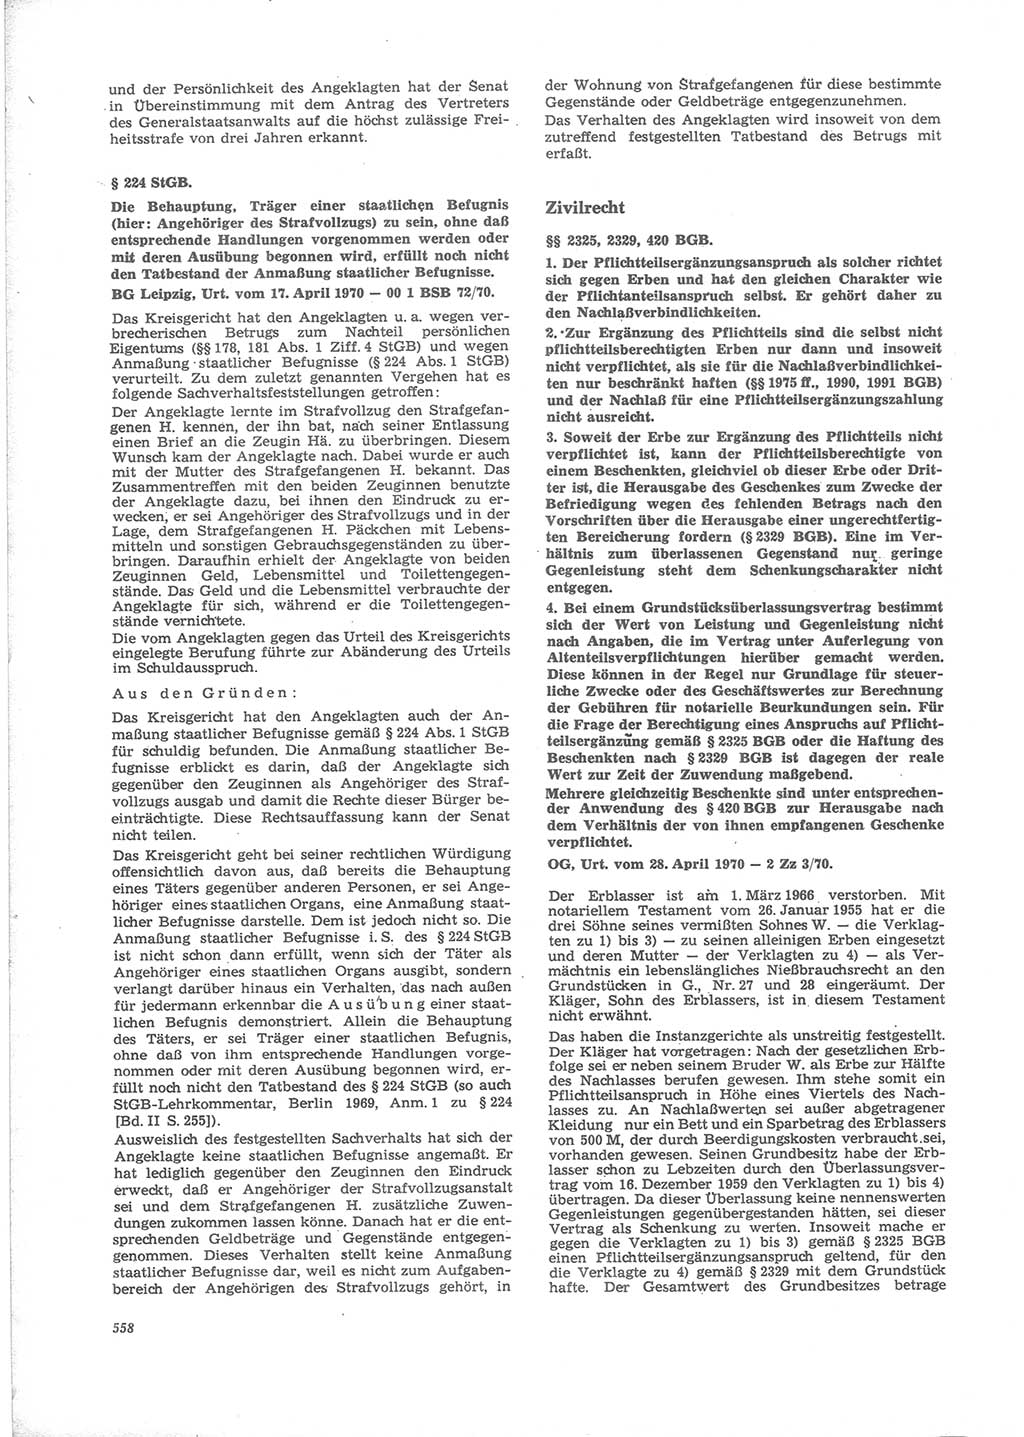 Neue Justiz (NJ), Zeitschrift für Recht und Rechtswissenschaft [Deutsche Demokratische Republik (DDR)], 24. Jahrgang 1970, Seite 558 (NJ DDR 1970, S. 558)